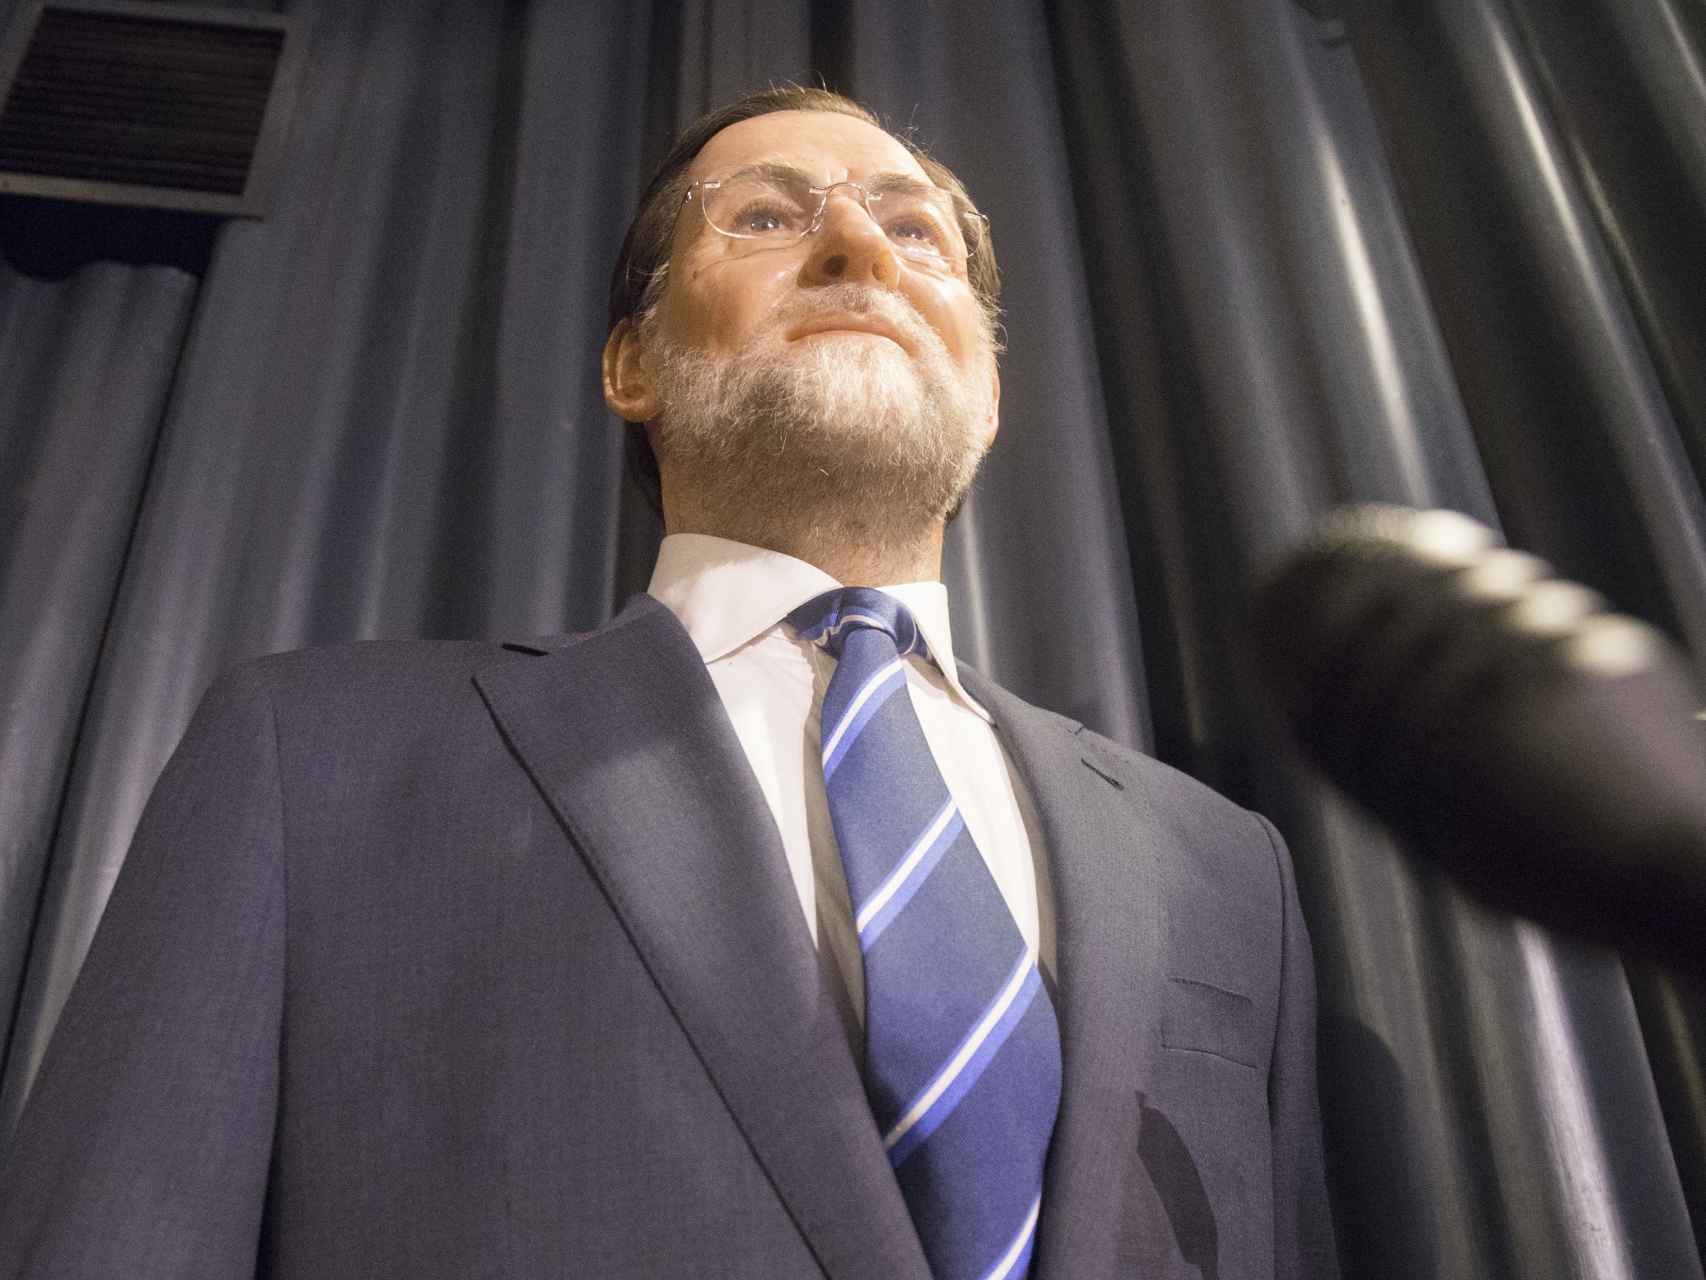 La actual figura de cera de Mariano Rajoy expuesta en el Museo.